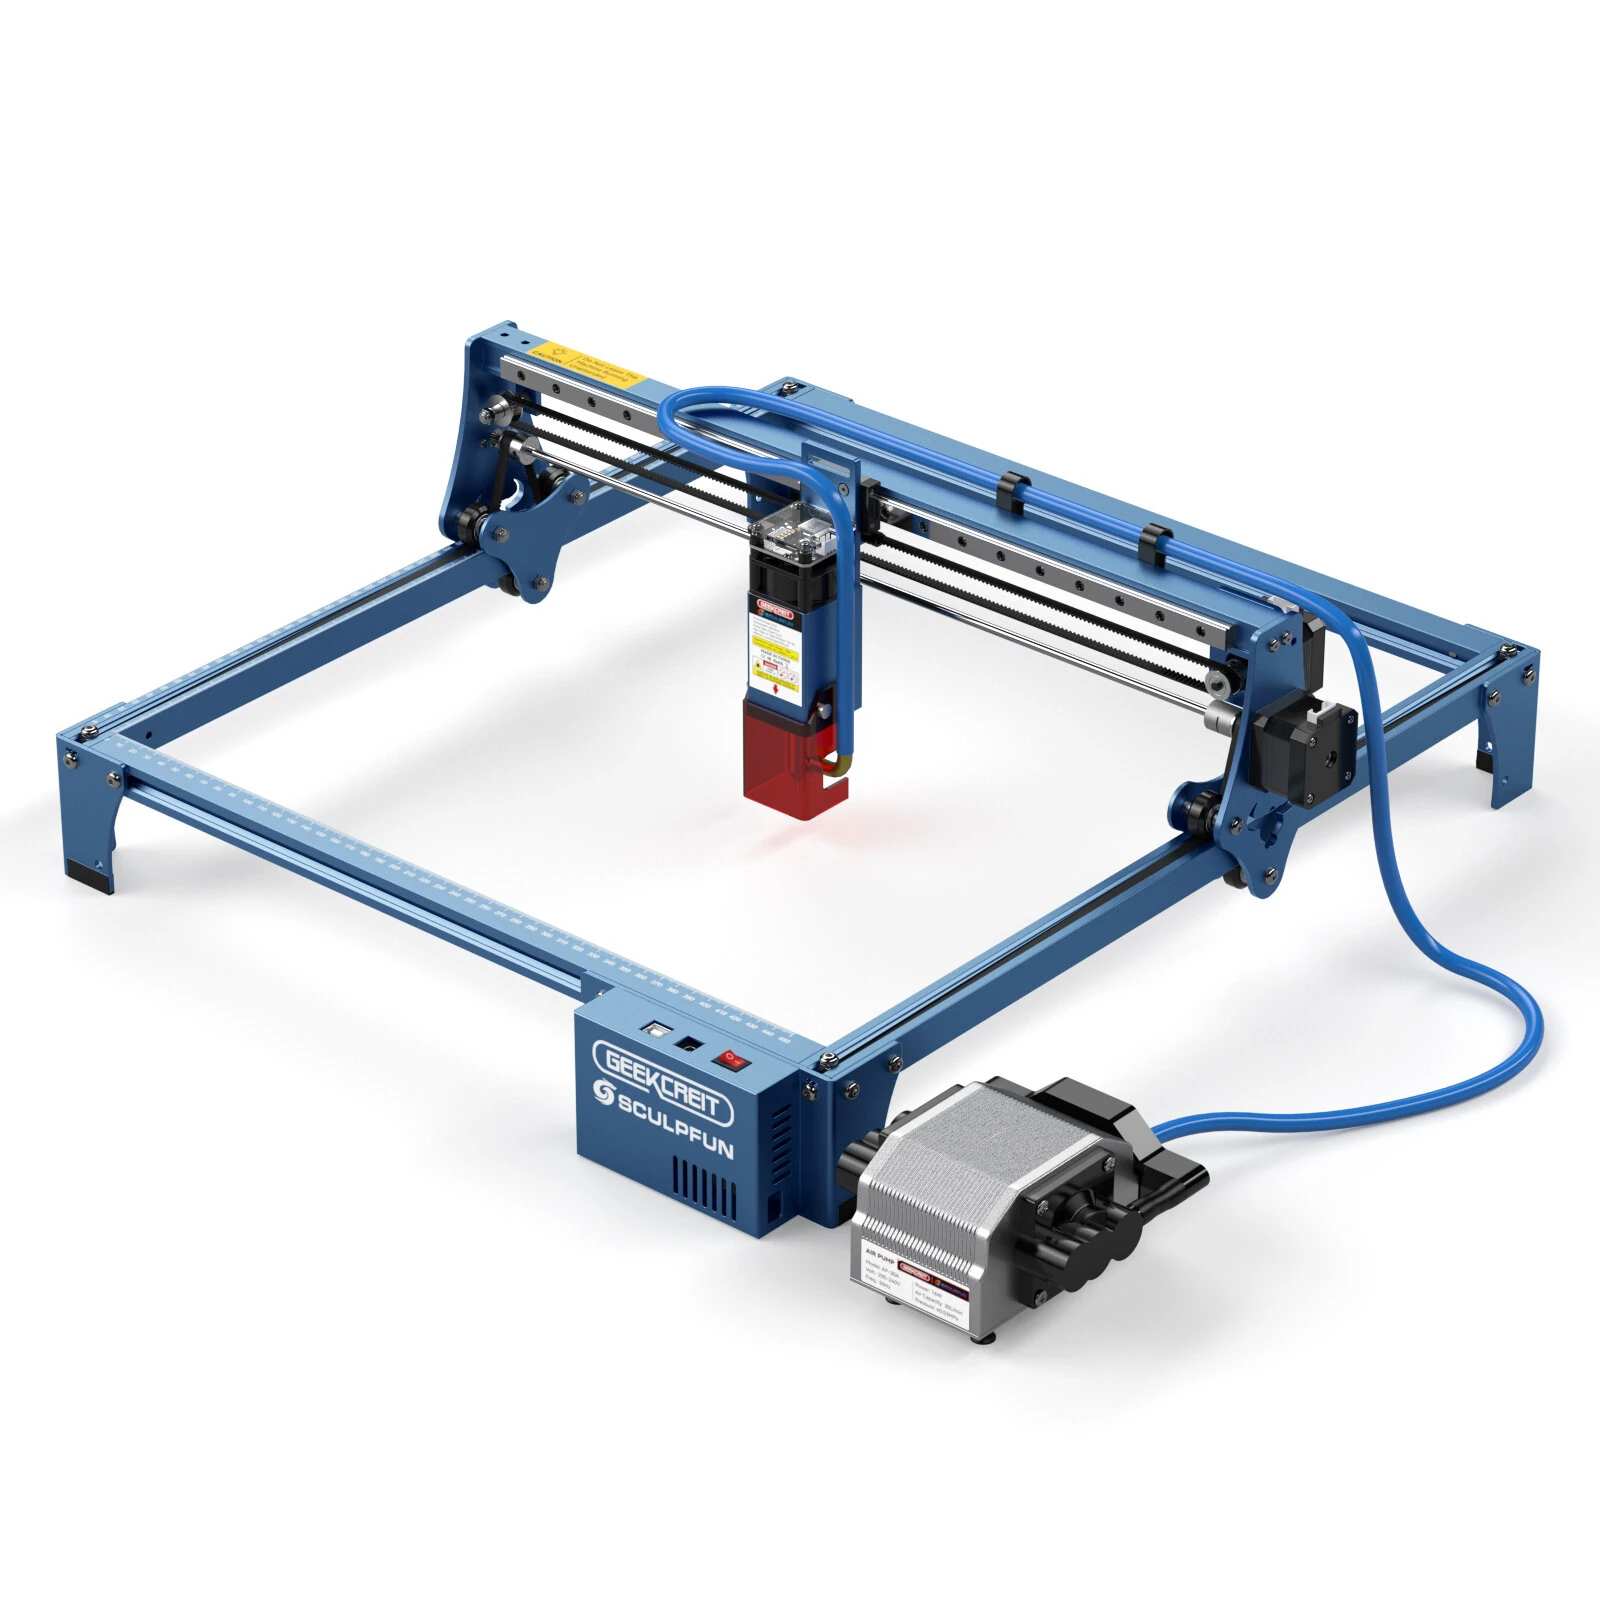 GEEKCREIT&SCULPFUN S10 Laser Engraving Machine Banggood Coupon Promo Code [US Warehouse]